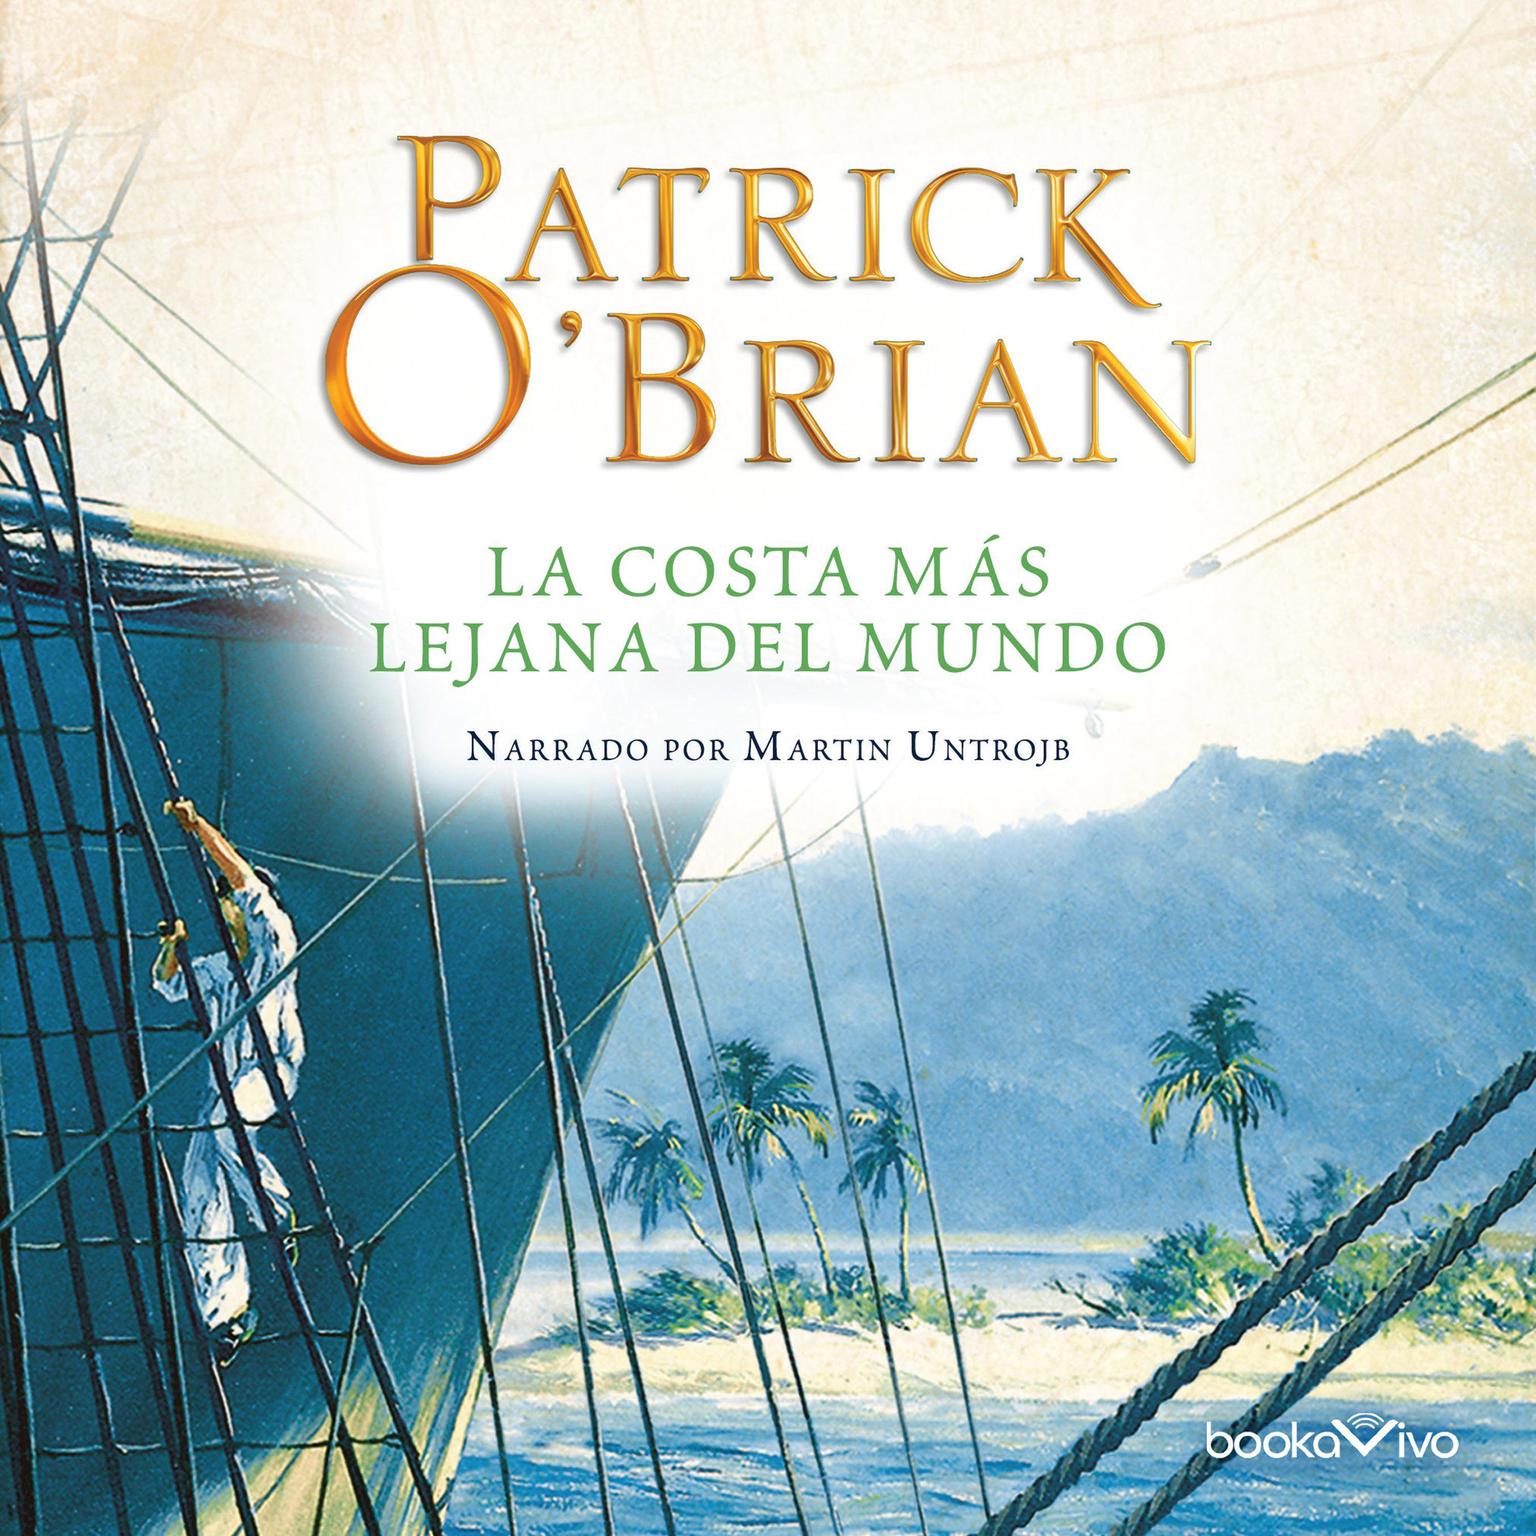 La costa más lejana del mundo Audiobook, by Patrick O'Brian